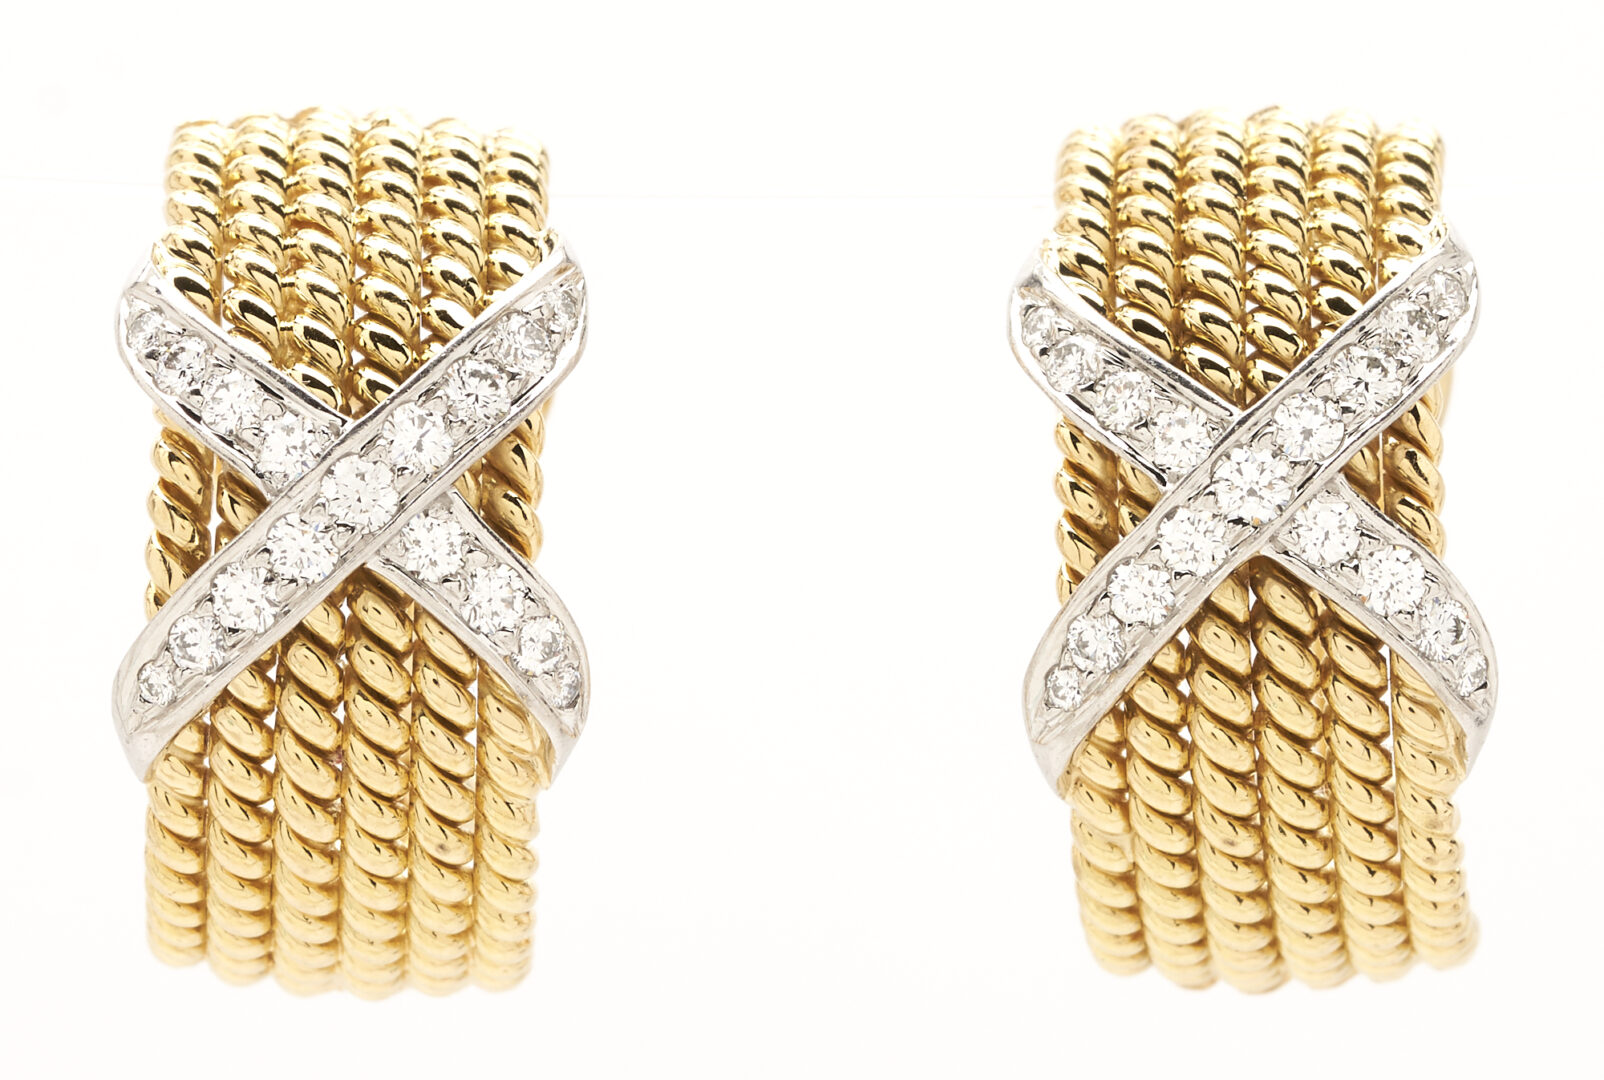 Lot 35: Tiffany & Co. Schlumberger 18K Diamond Earrings